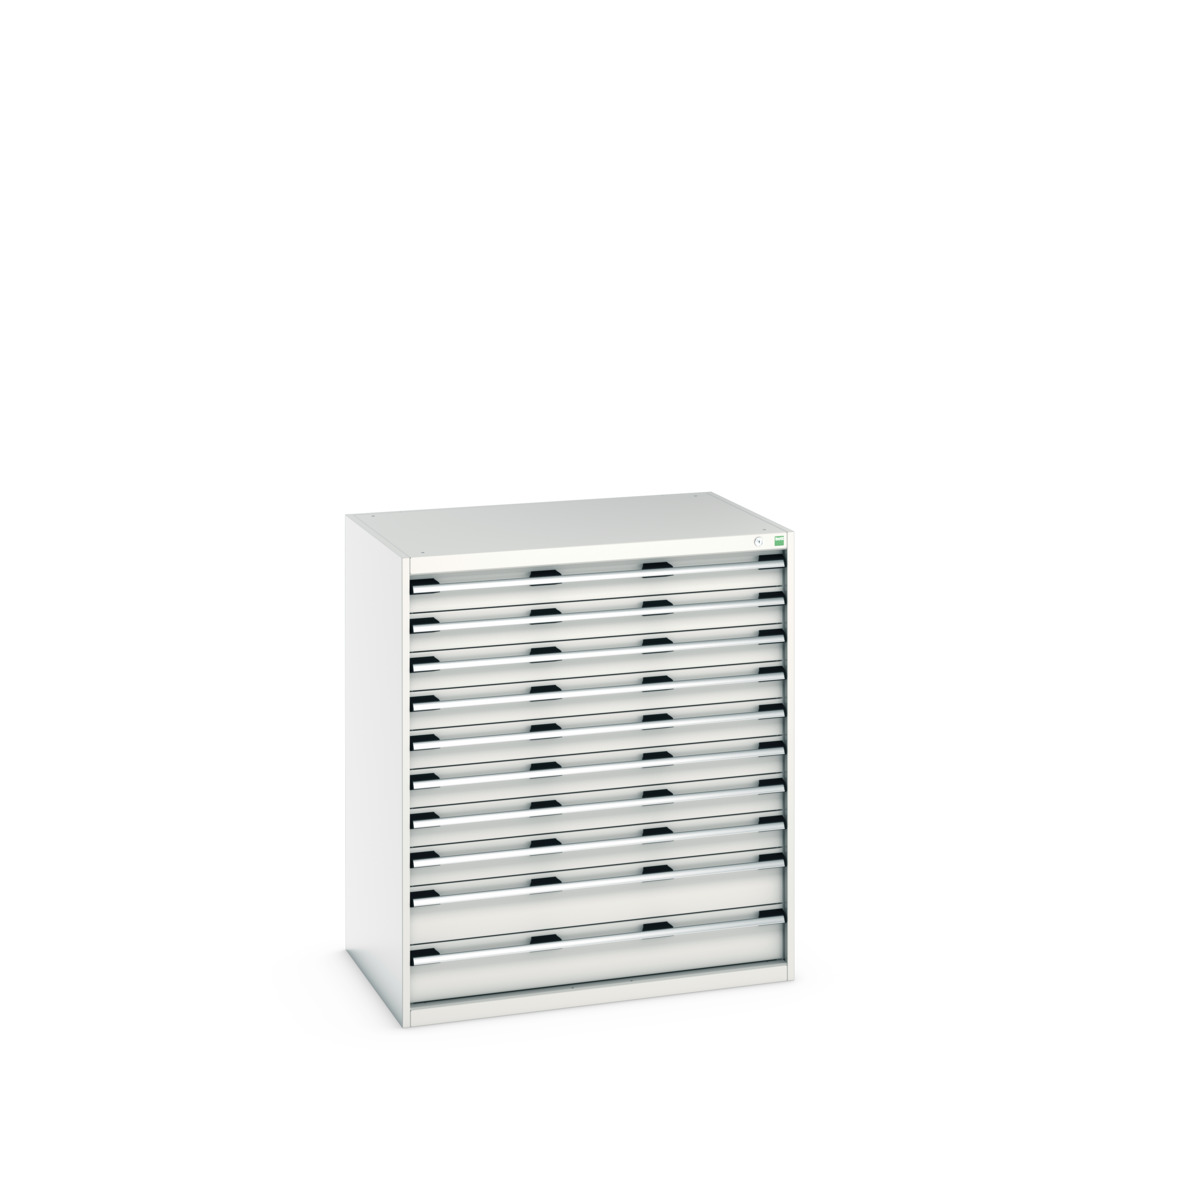 40029034.16V - cubio drawer cabinet